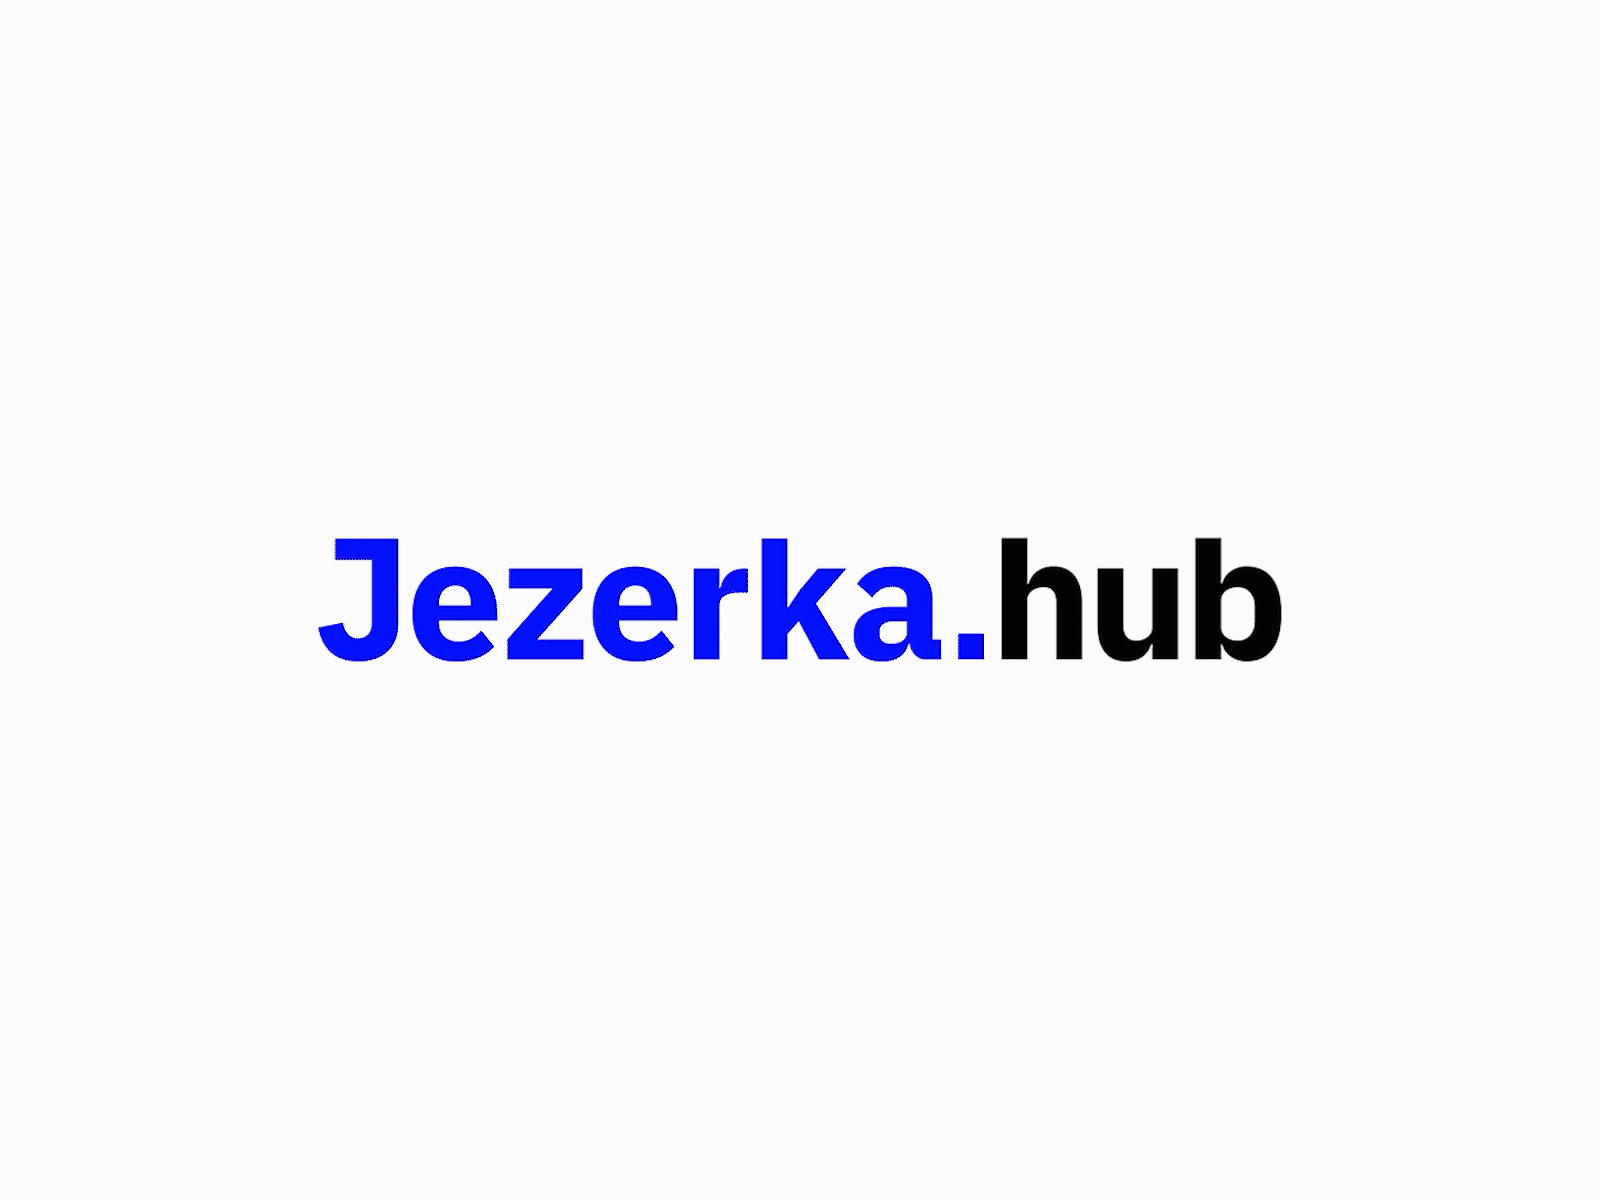 Jezerka Hub Logotype brand identity branding design logo logo design logotype minimal minimalism minimalist typography vector